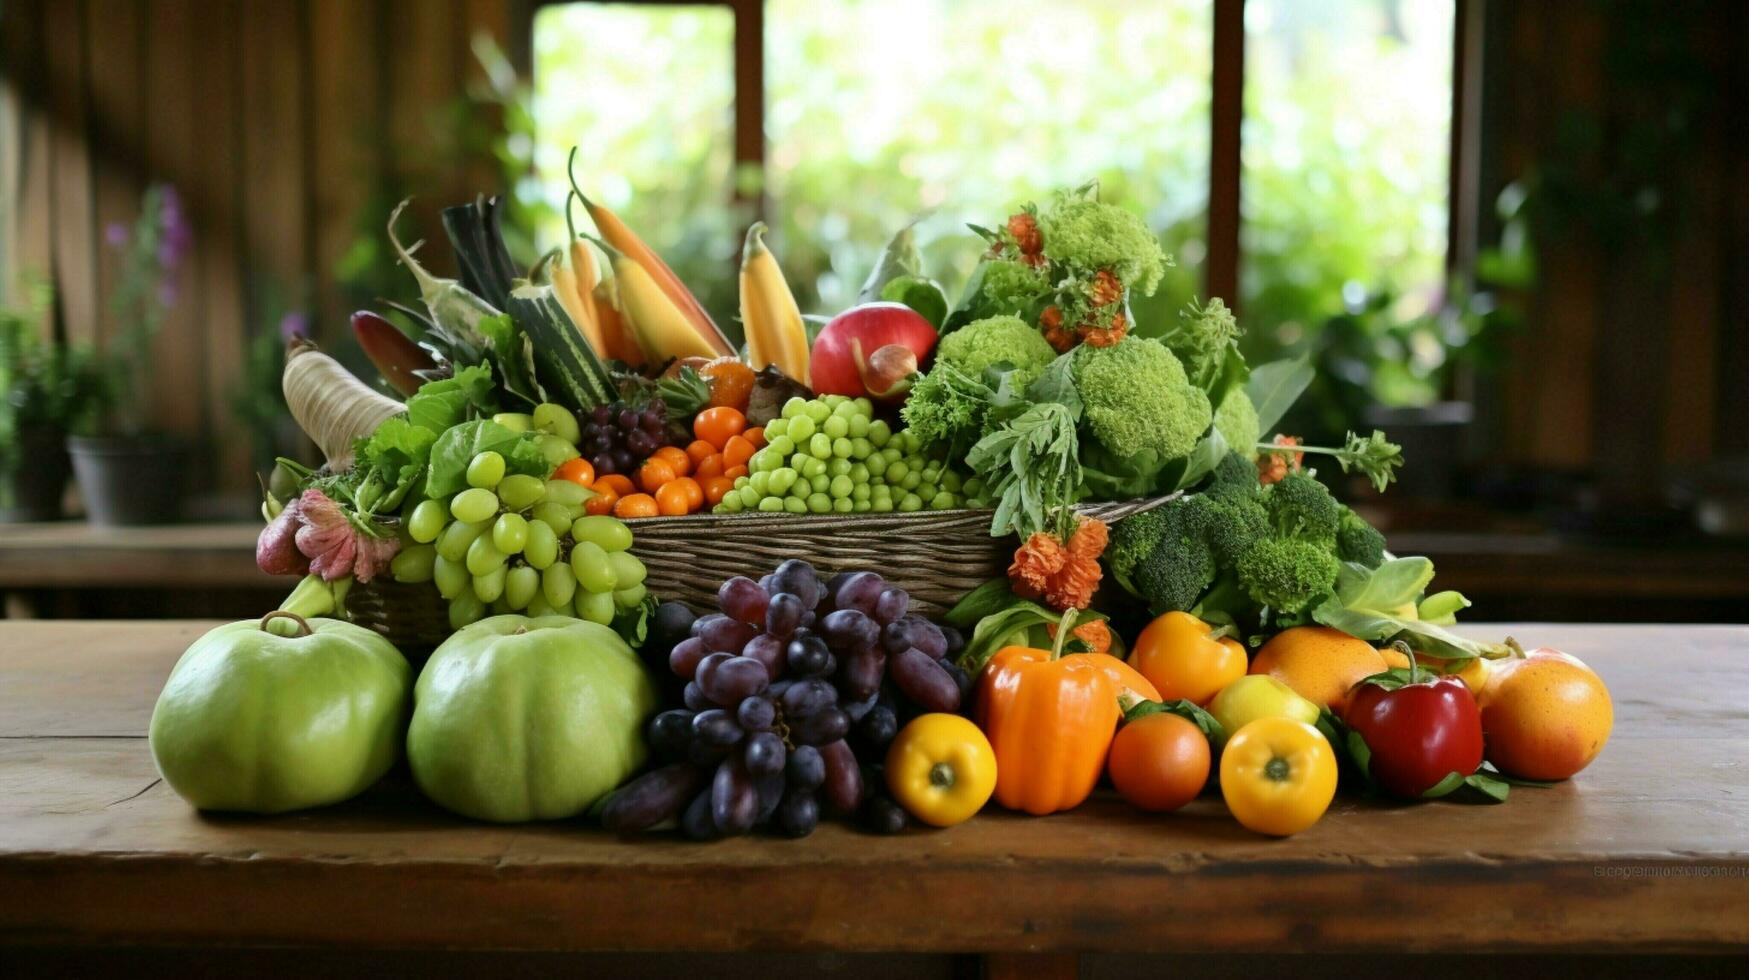 Frais fruit et légumes sur rustique table arrangement photo